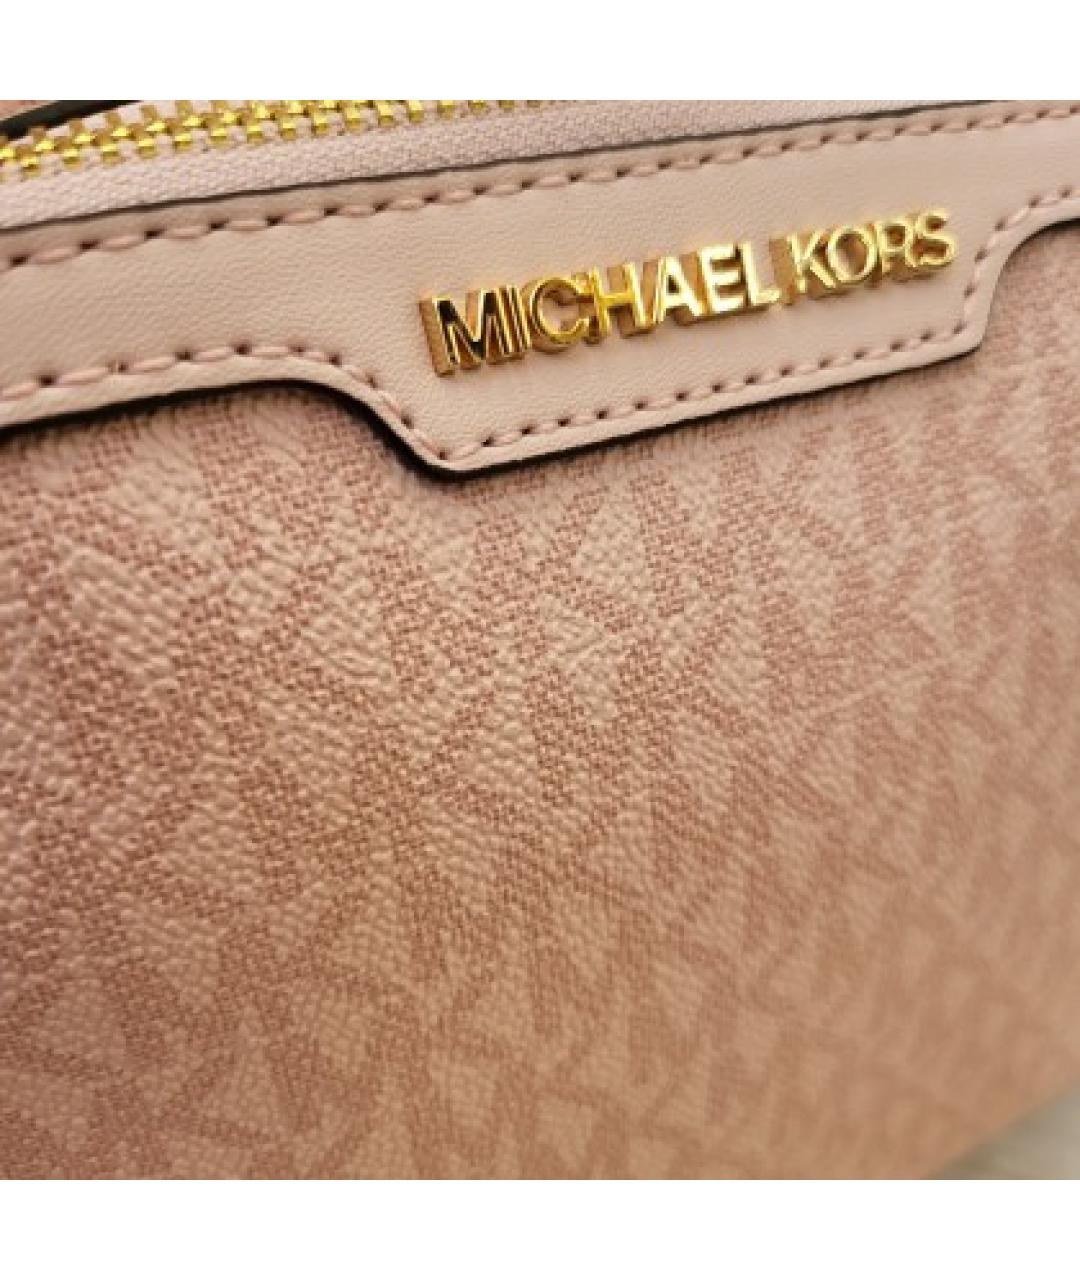 MICHAEL KORS Розовый кожаный рюкзак, фото 6